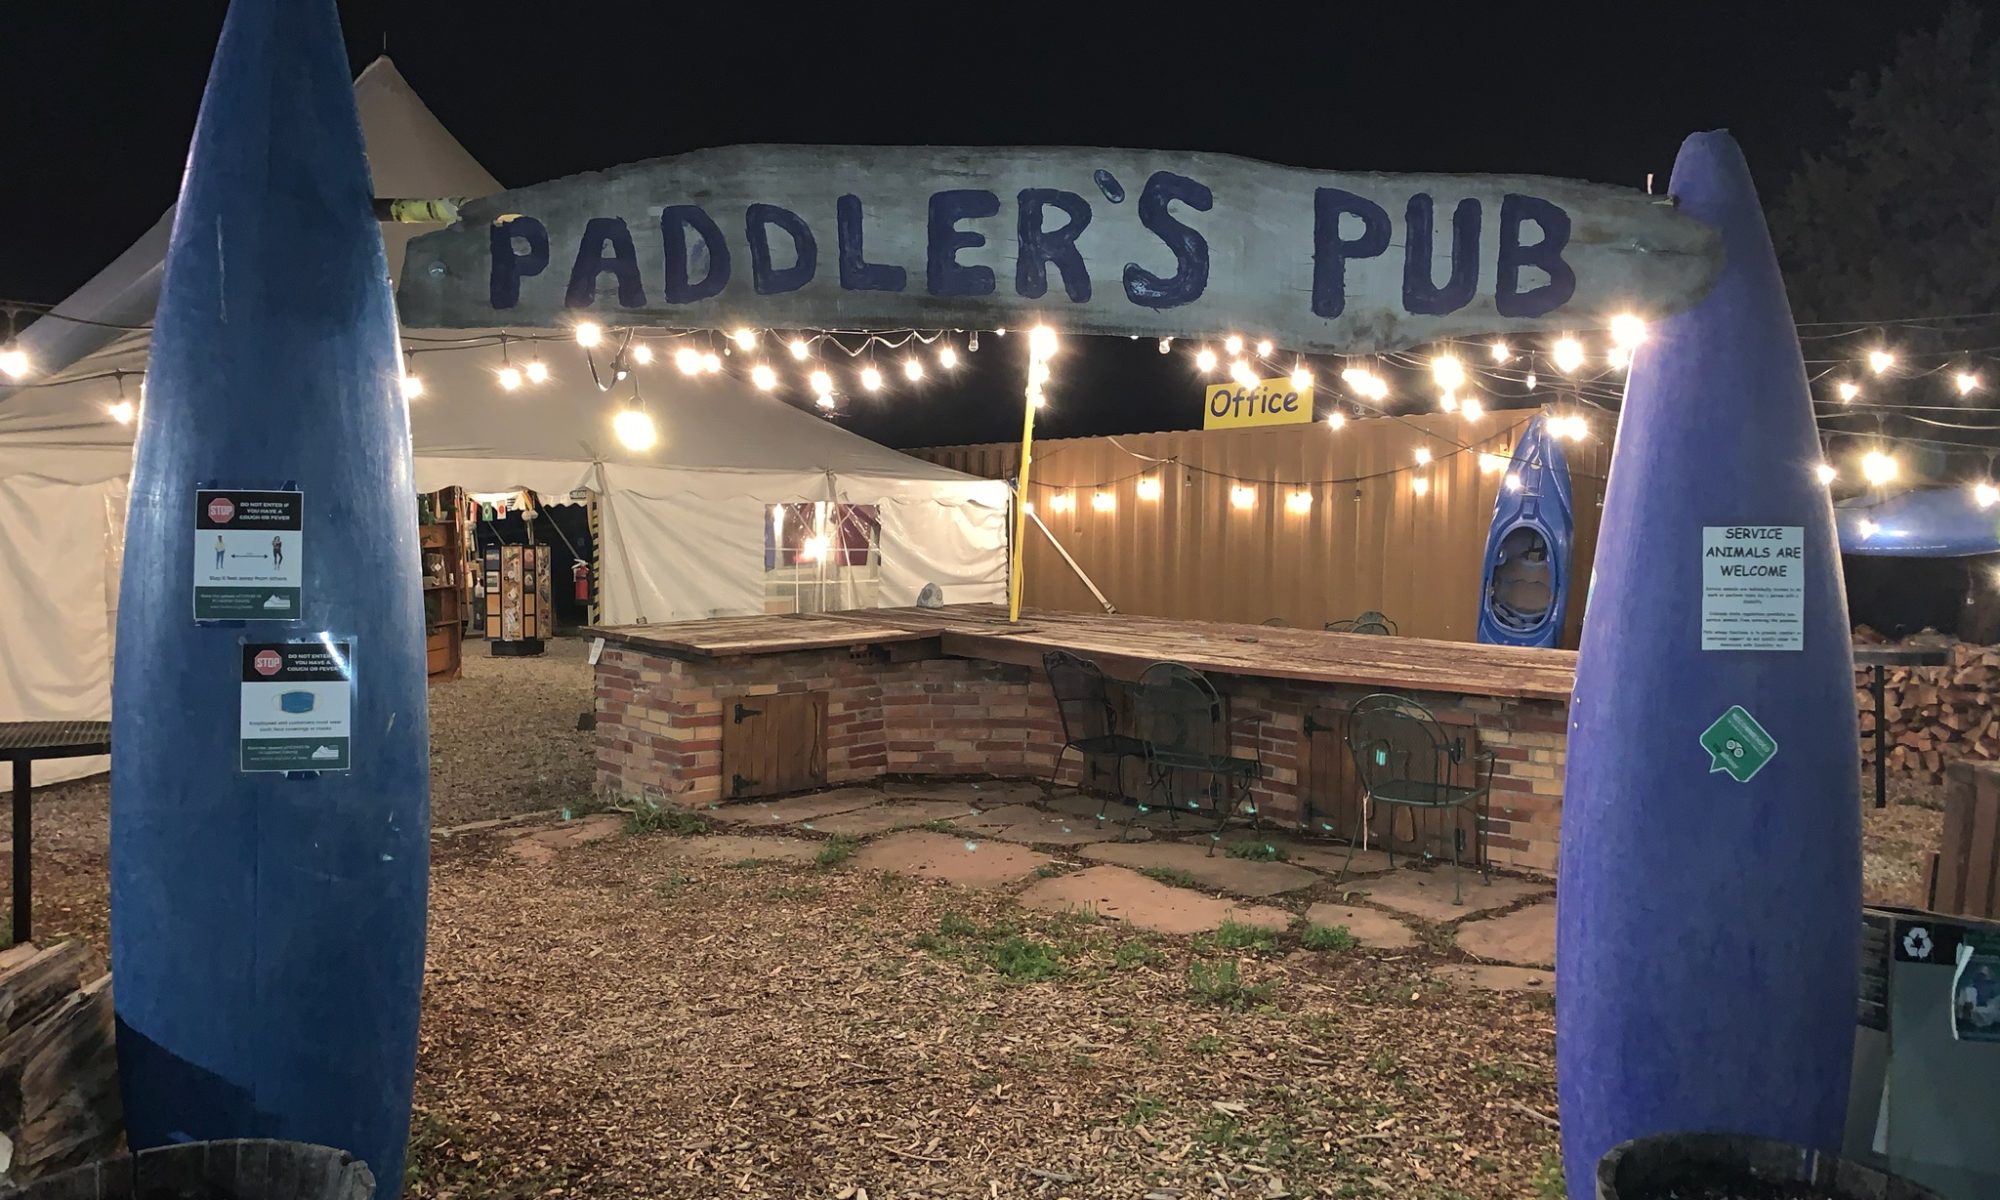 Paddler's Pub